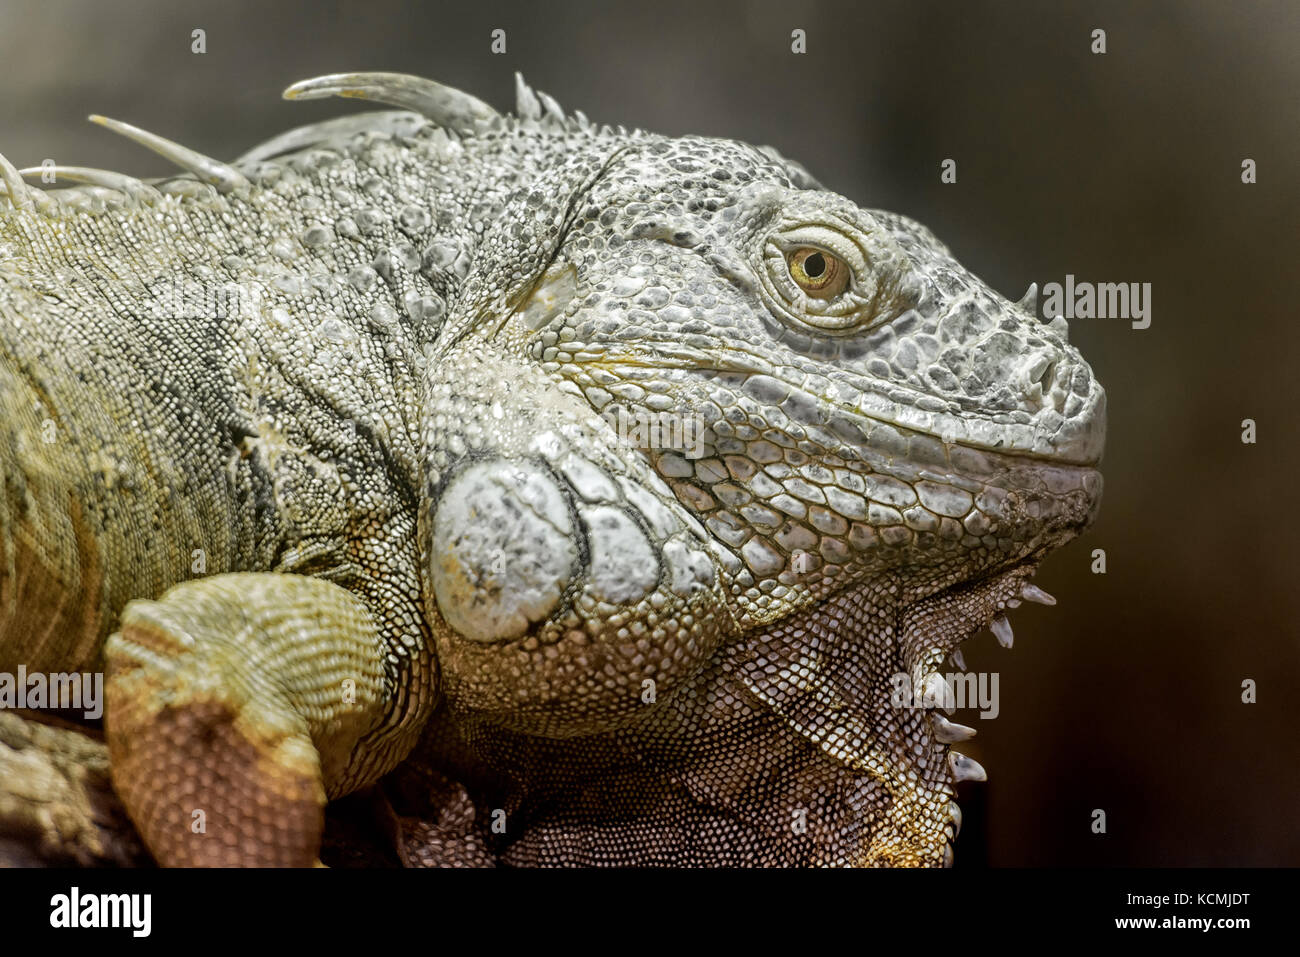 Chiudere la vista ofa grande americano iguana verde la testa Foto Stock